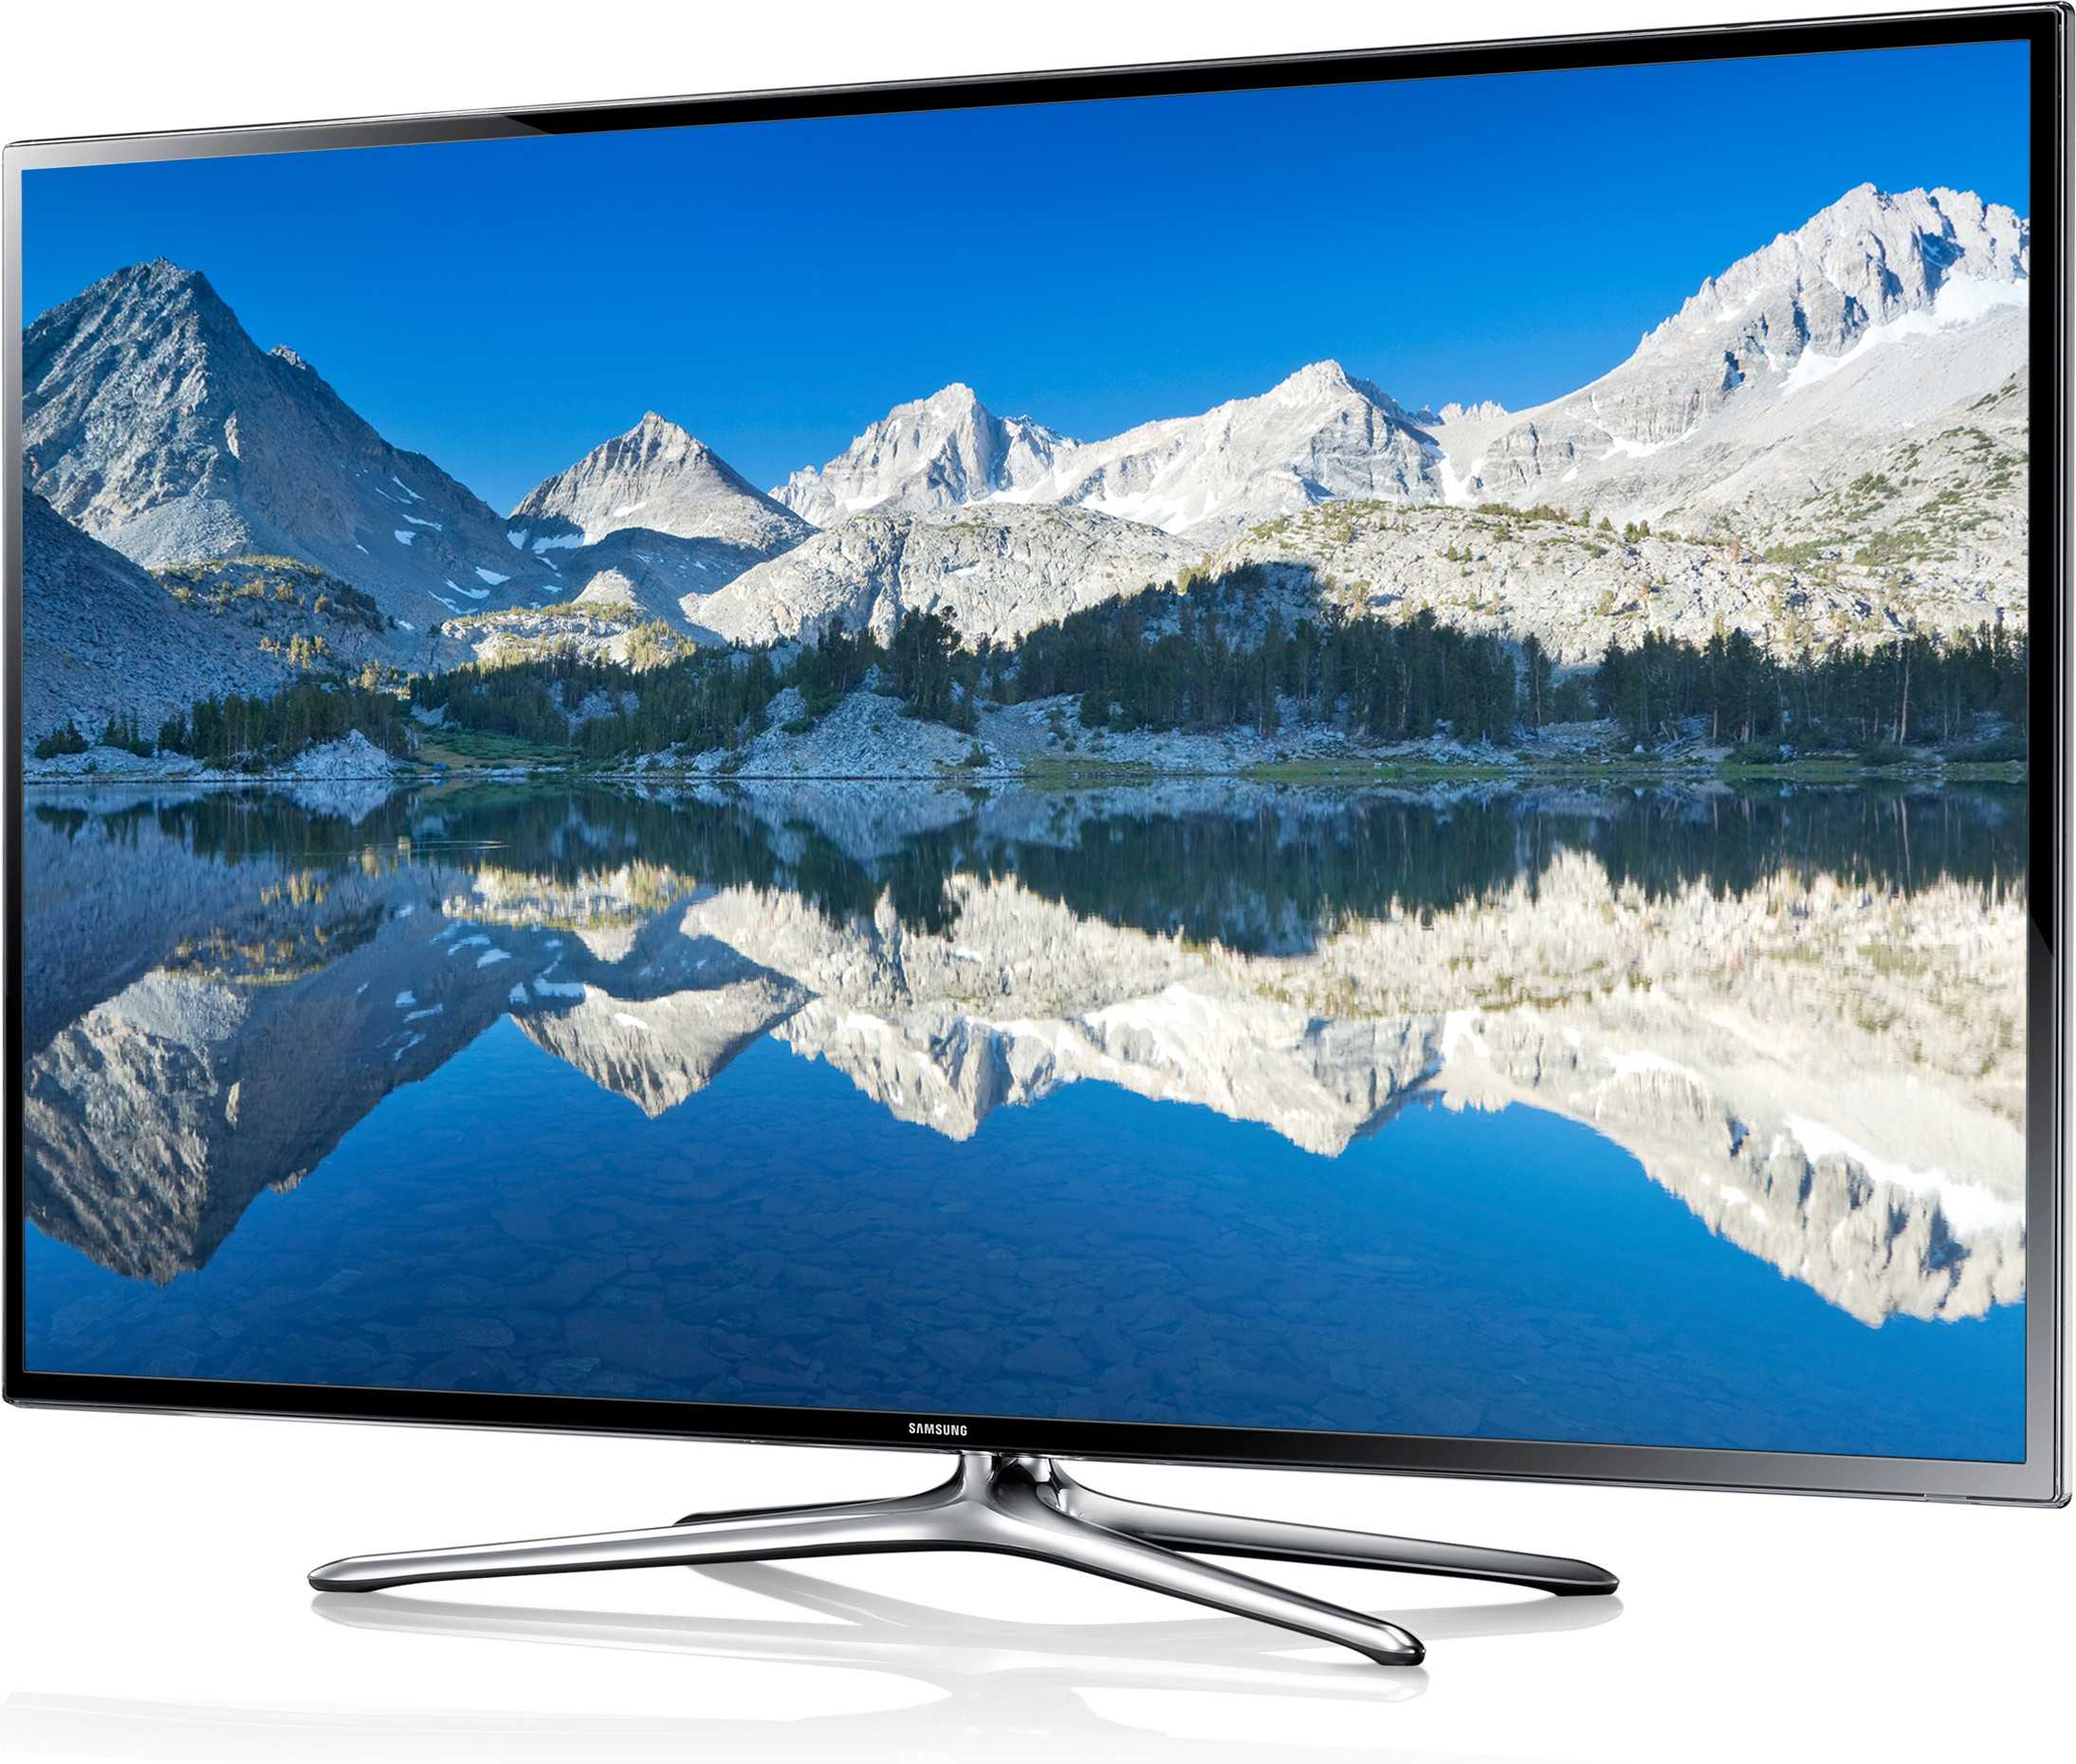 Samsung ue50f6800авx (серебристый) - купить , скидки, цена, отзывы, обзор, характеристики - телевизоры